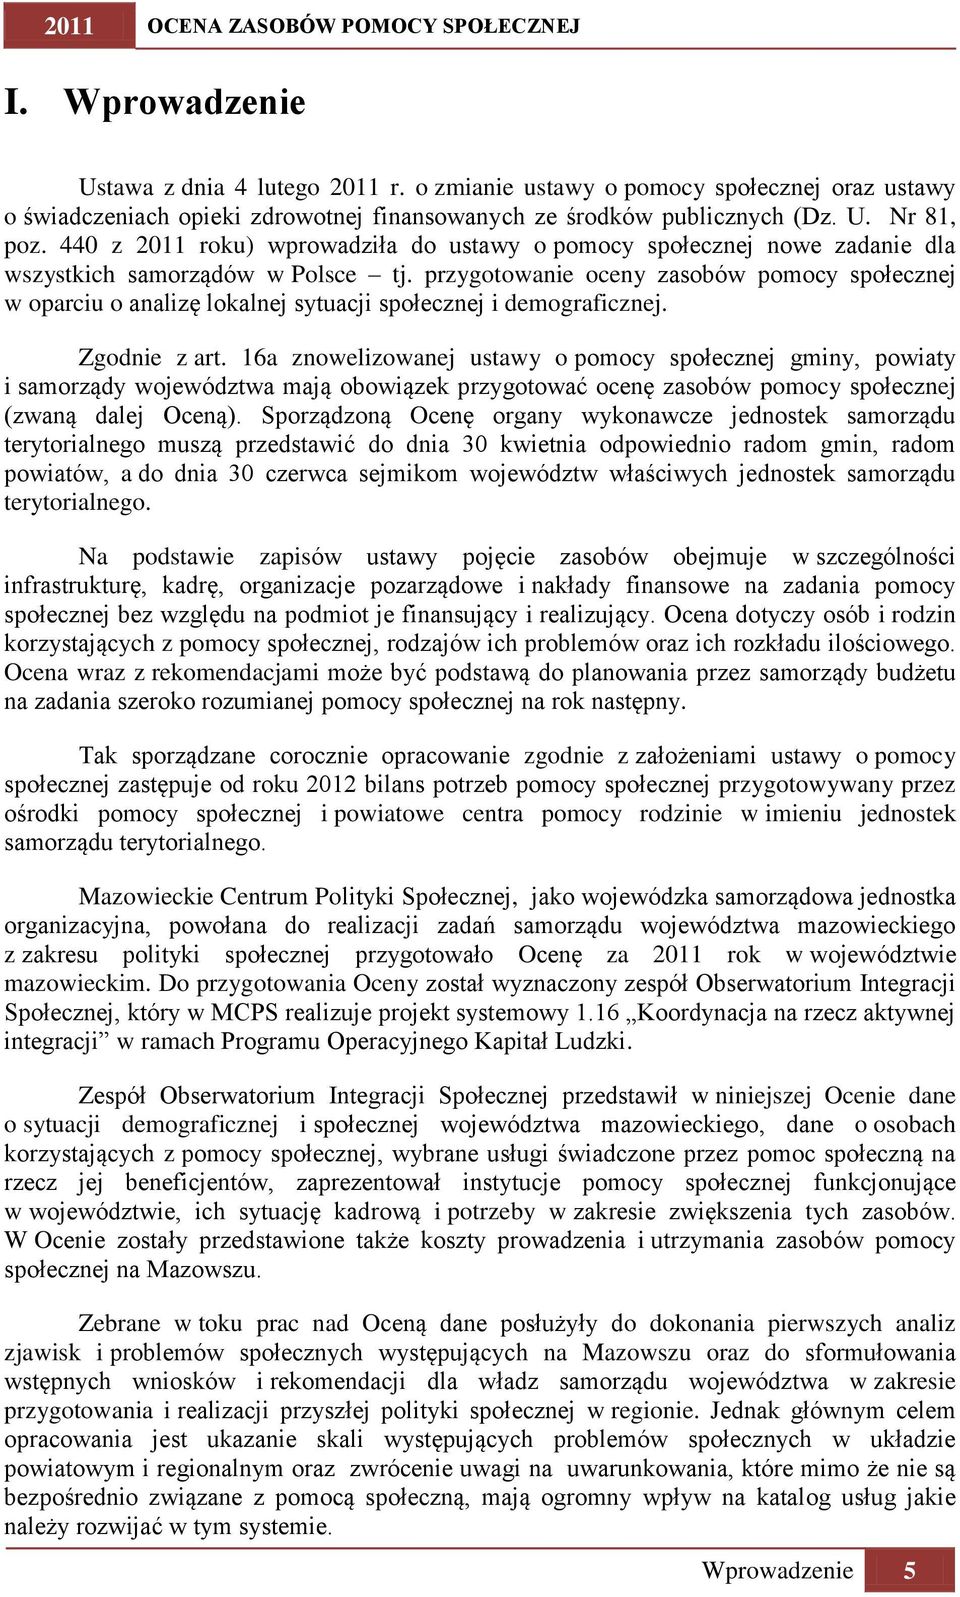 440 z 2011 roku) wprowadziła do ustawy o pomocy społecznej nowe zadanie dla wszystkich samorządów w Polsce tj.